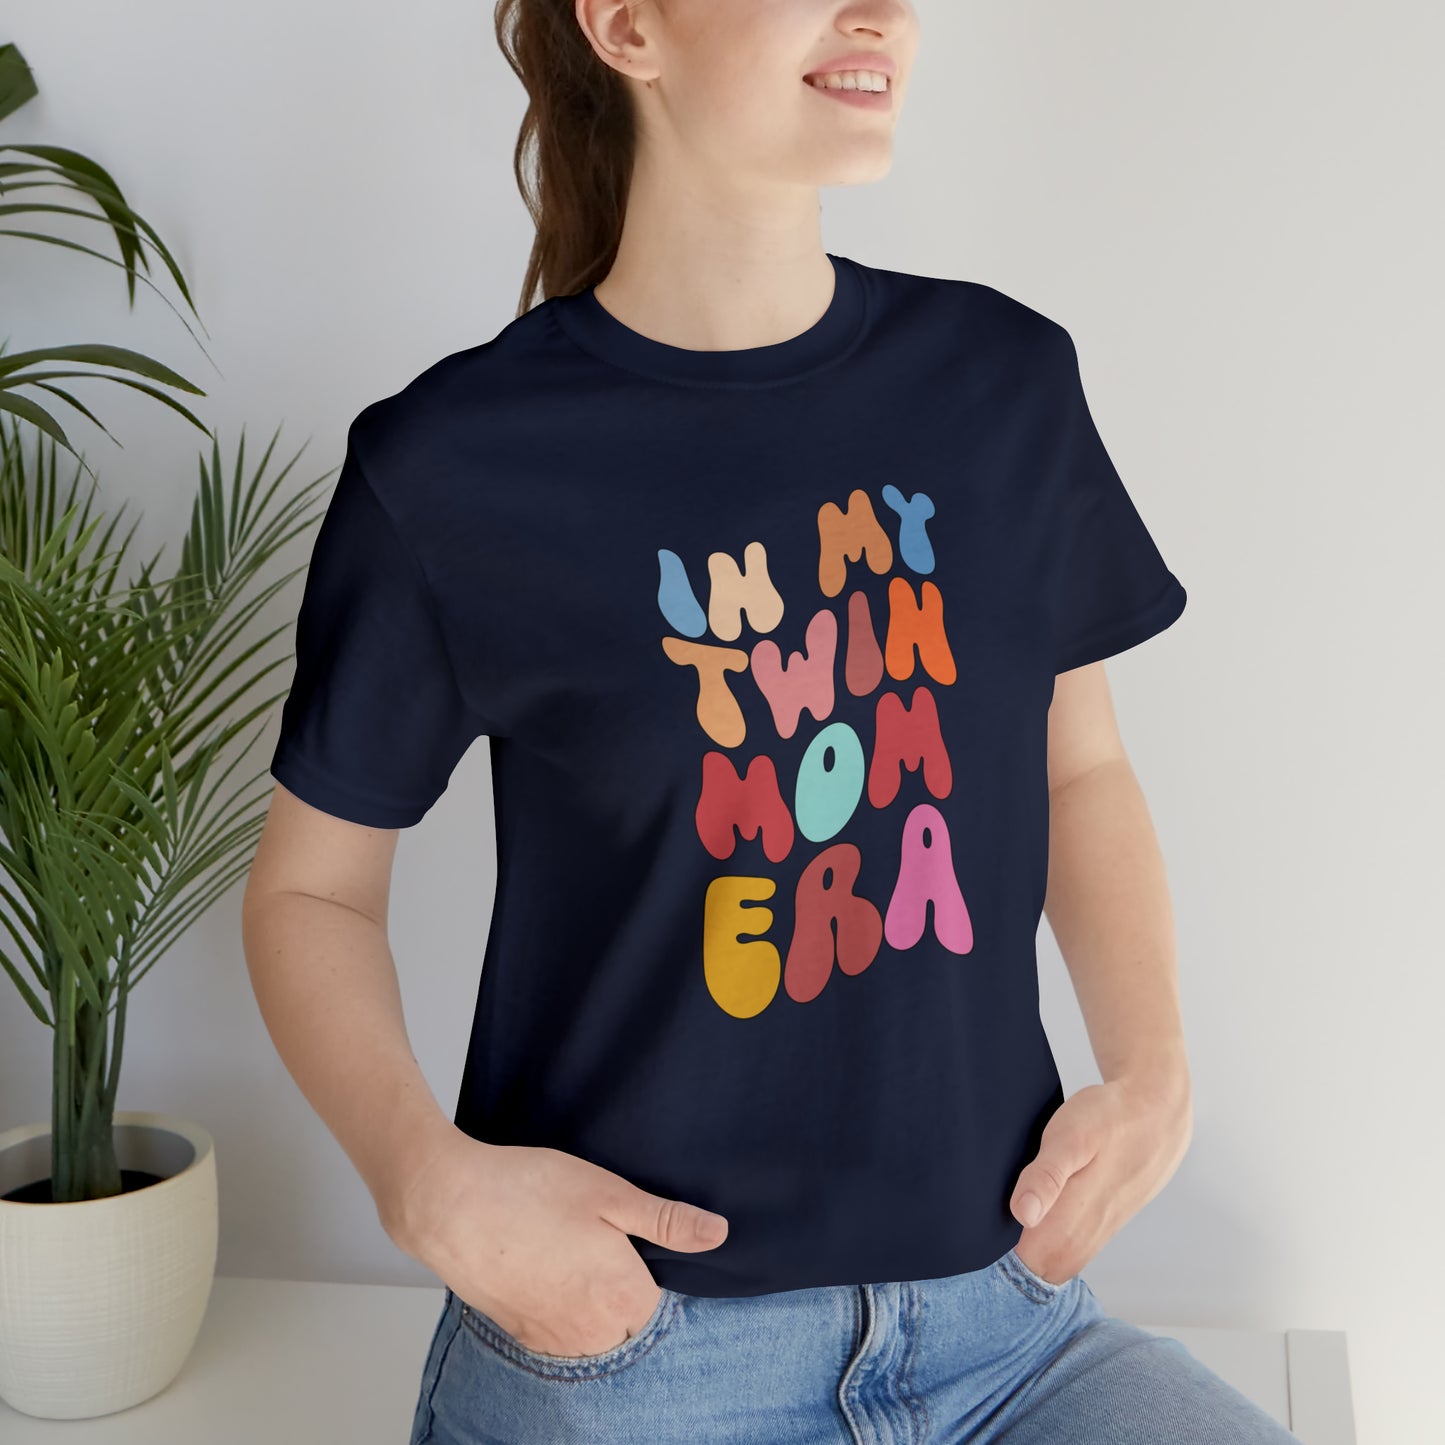 Shirt for Twin Mom, In My Twin Mom Era Shirt, Twin Mom Era Shirt, Funny Twin Mom Shirt, Twin Moms Club Shirt, T341